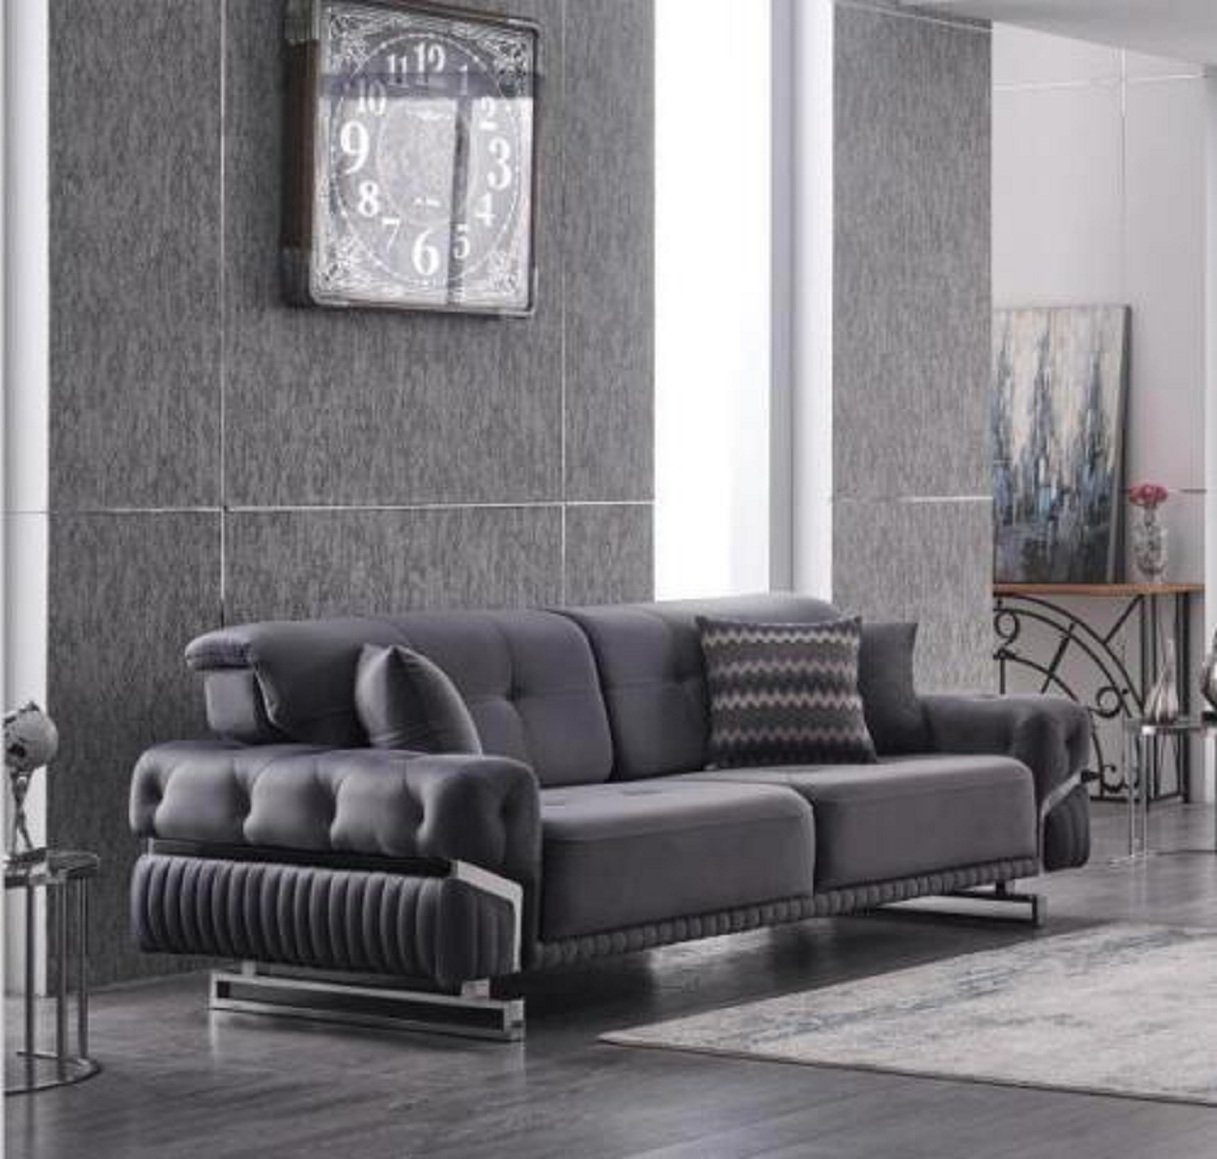 JVmoebel 3-Sitzer Graues Sofa Komplett Wohnzimmermöbel Luxus Polstergarnitur Dreisitzer, 2 Teile, Made in Europa